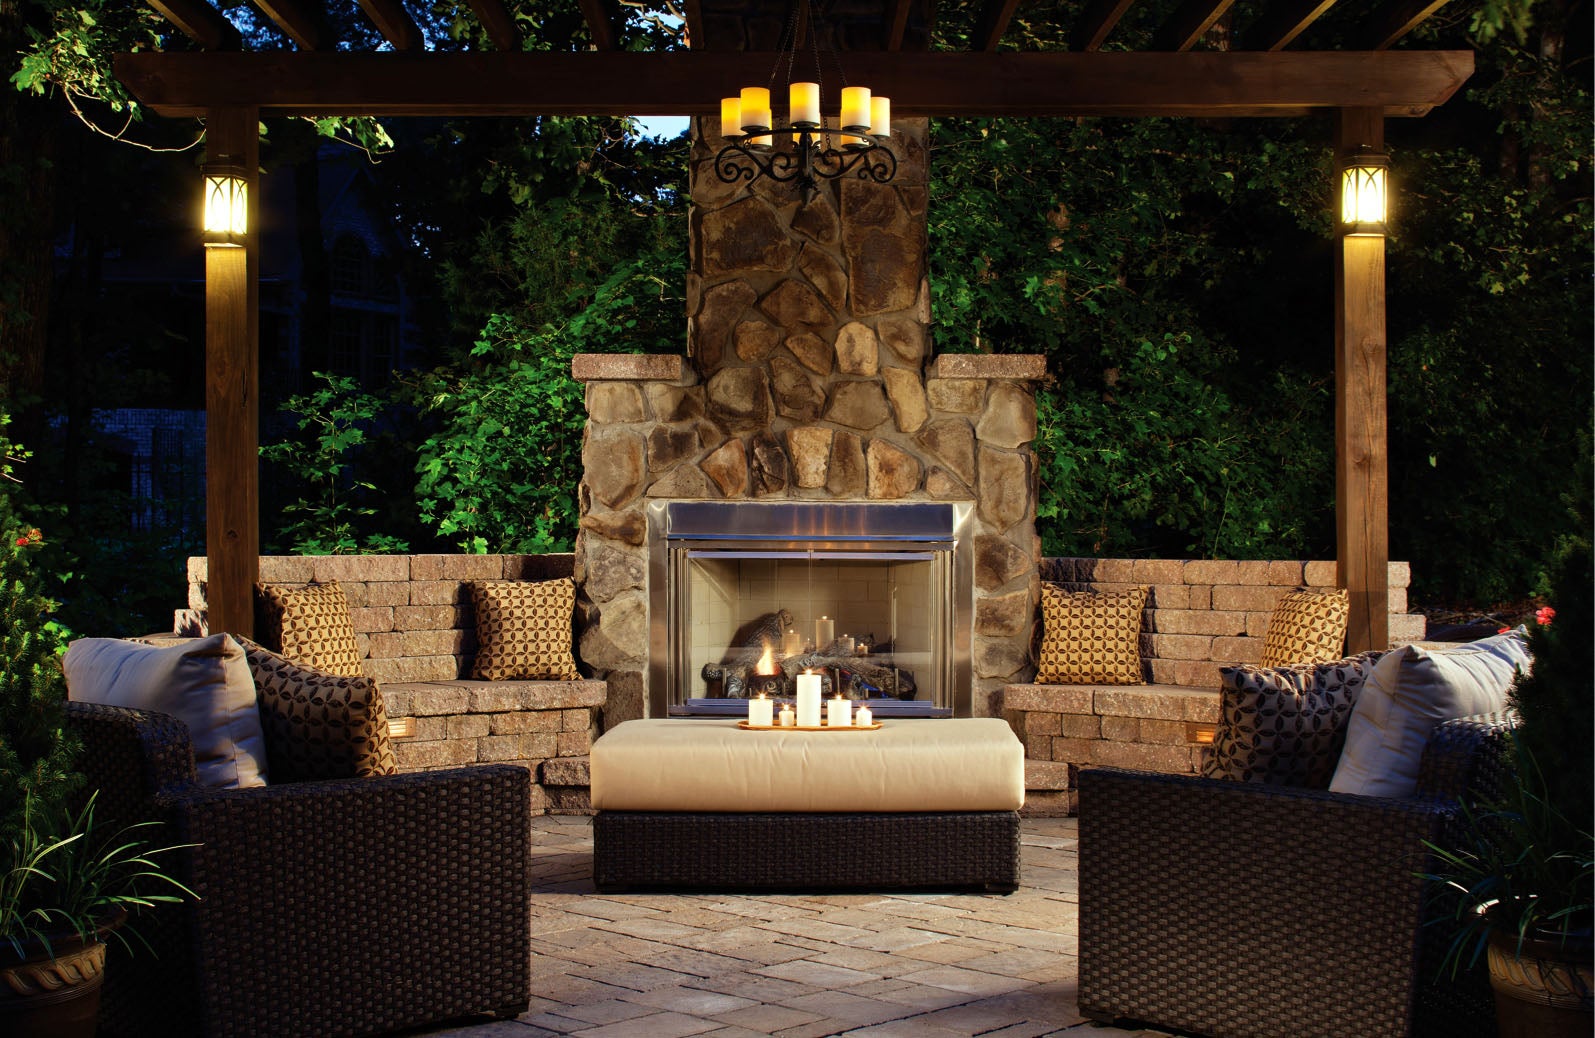 Outdoor Fireplace Design Built-in Seating Arrangement